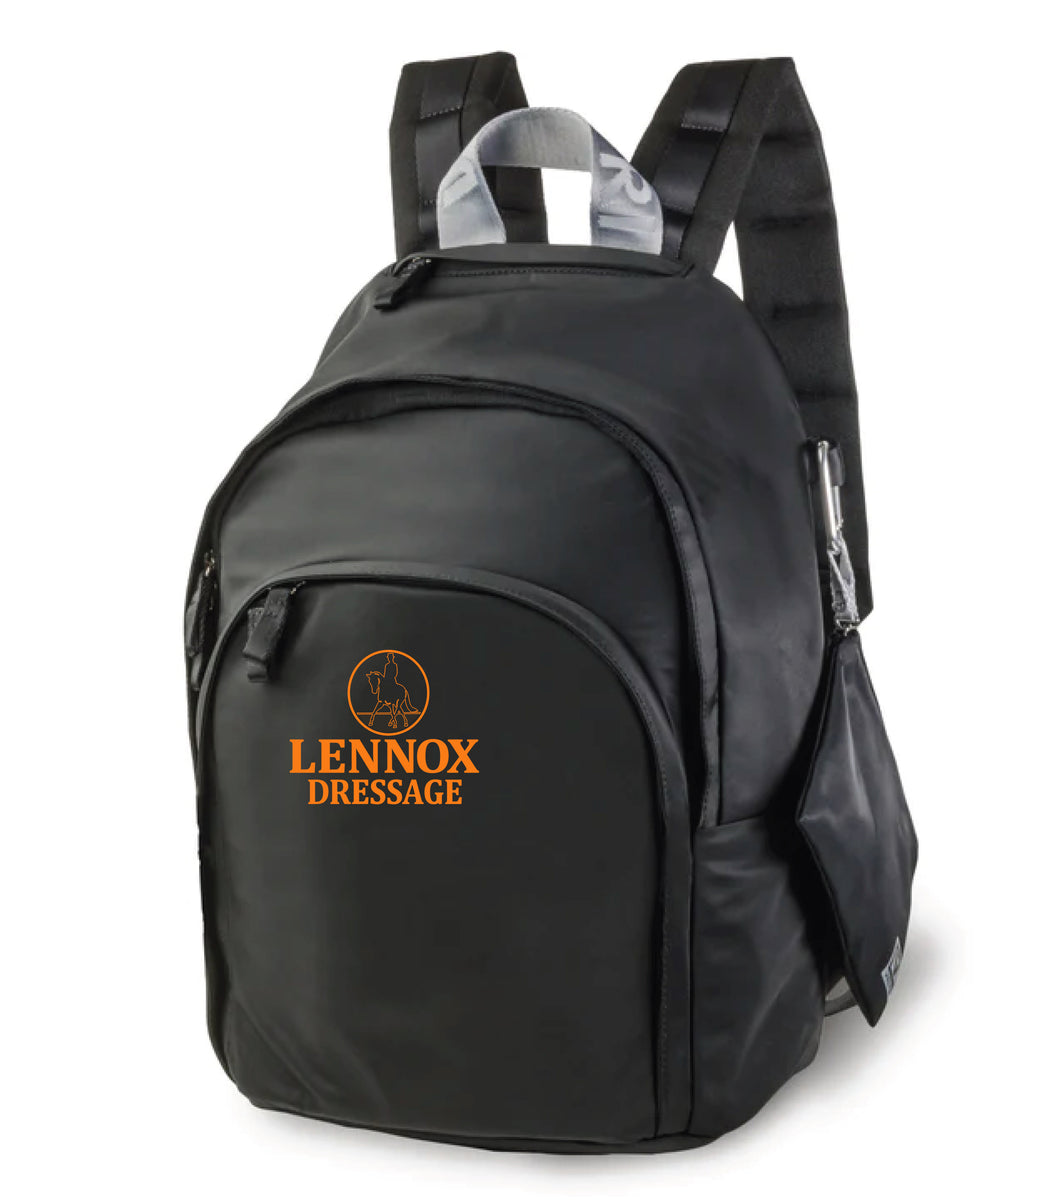 Lennox Dressage- Veltri Sport- Rider Backpack